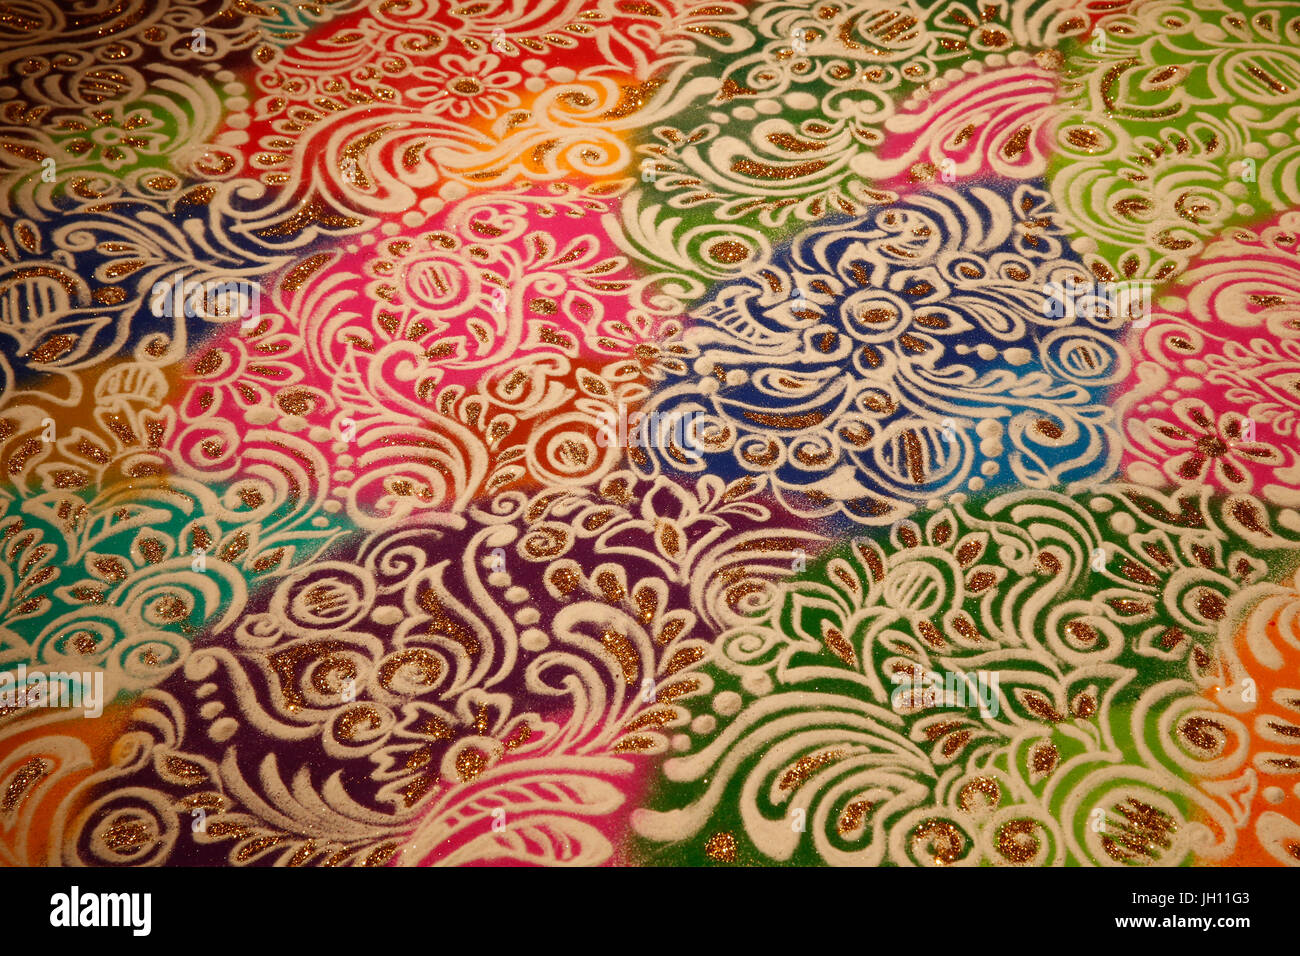 Diwali rangoli fait par artiste Kalpana Jadhav. United Kingdom. Banque D'Images